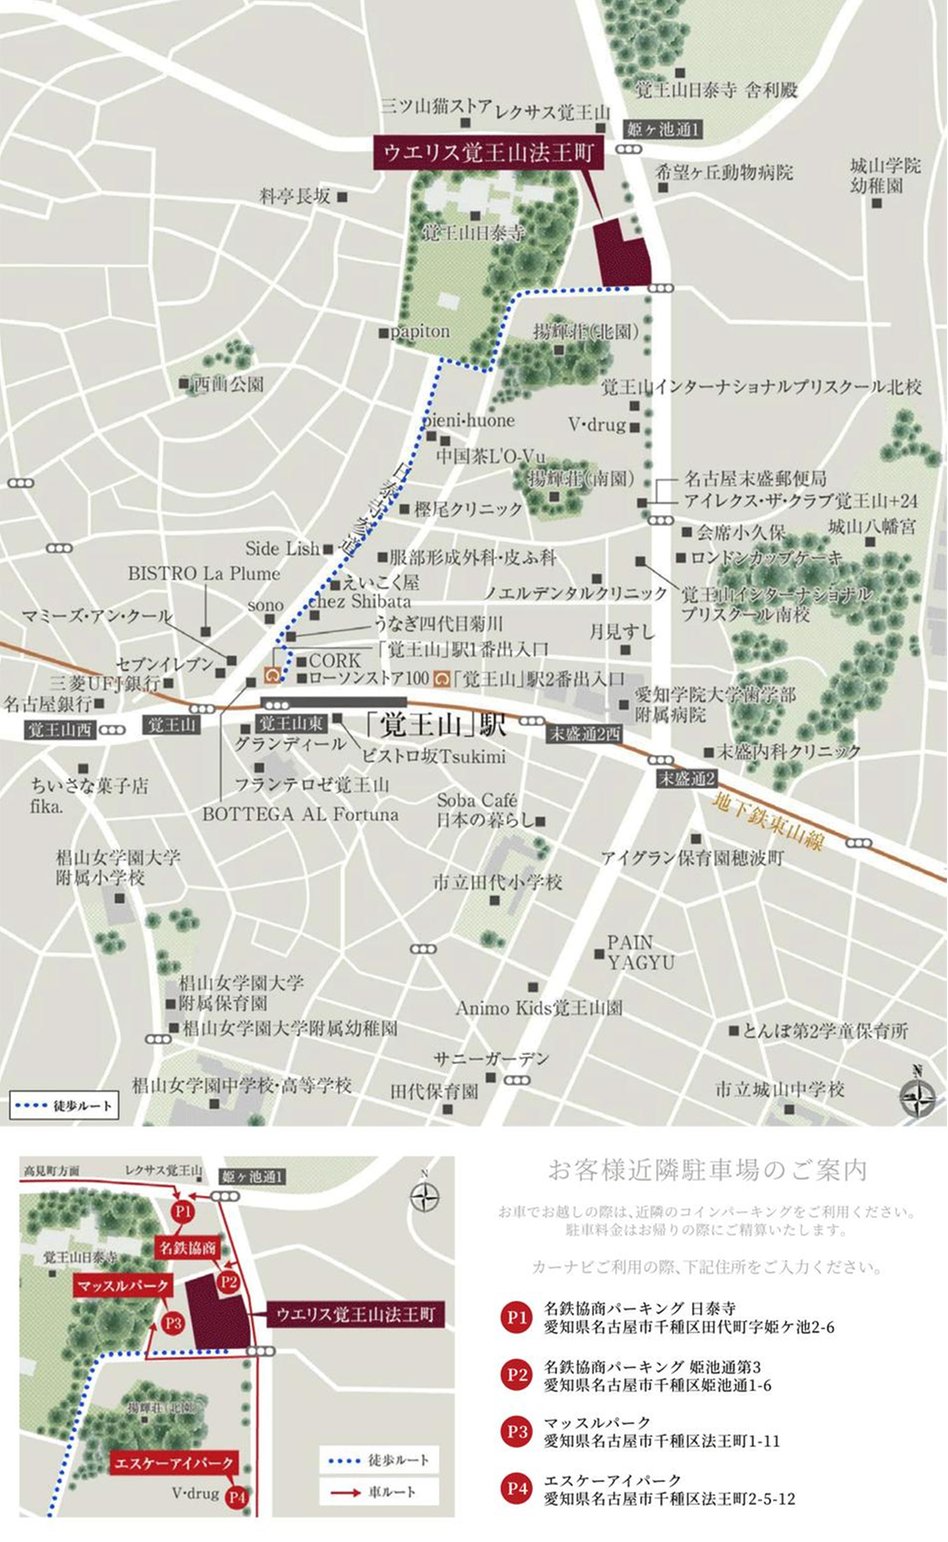 ウエリス覚王山法王町の現地案内図